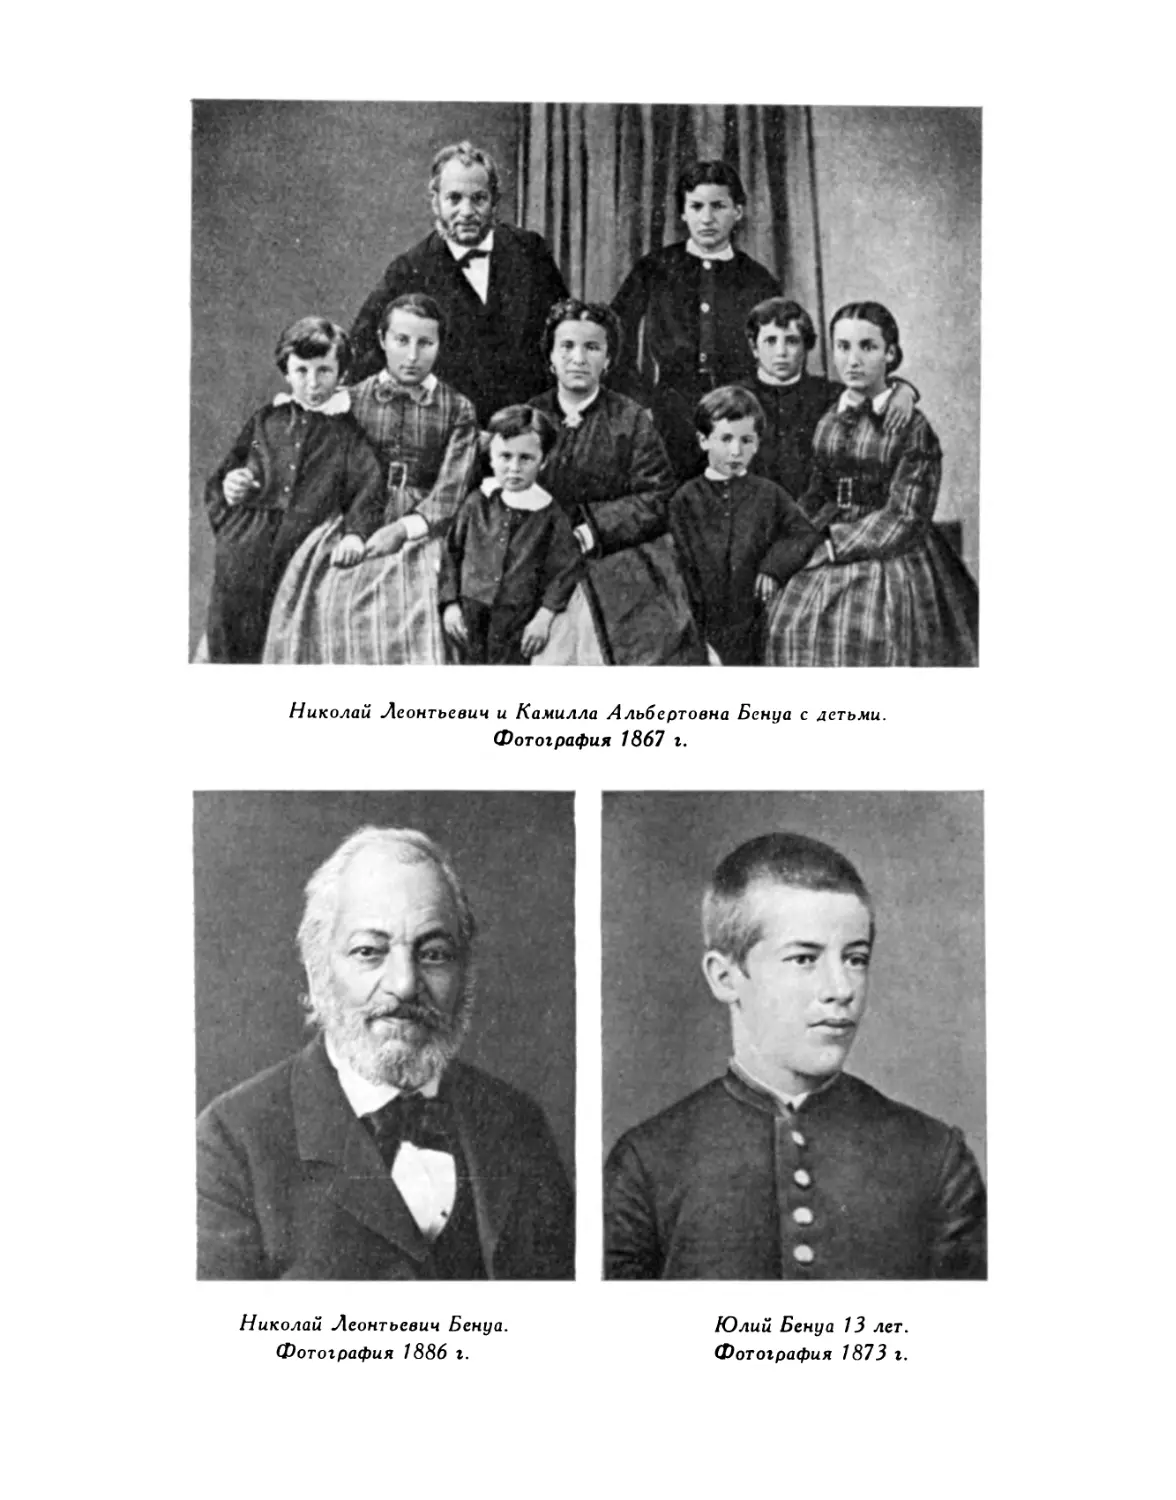 Николай Леонтьевич и Камилла Альбертовна Бенуа с детьми; Николай Леонтьевич Бенуа; Юлий Бенуа 13 лет